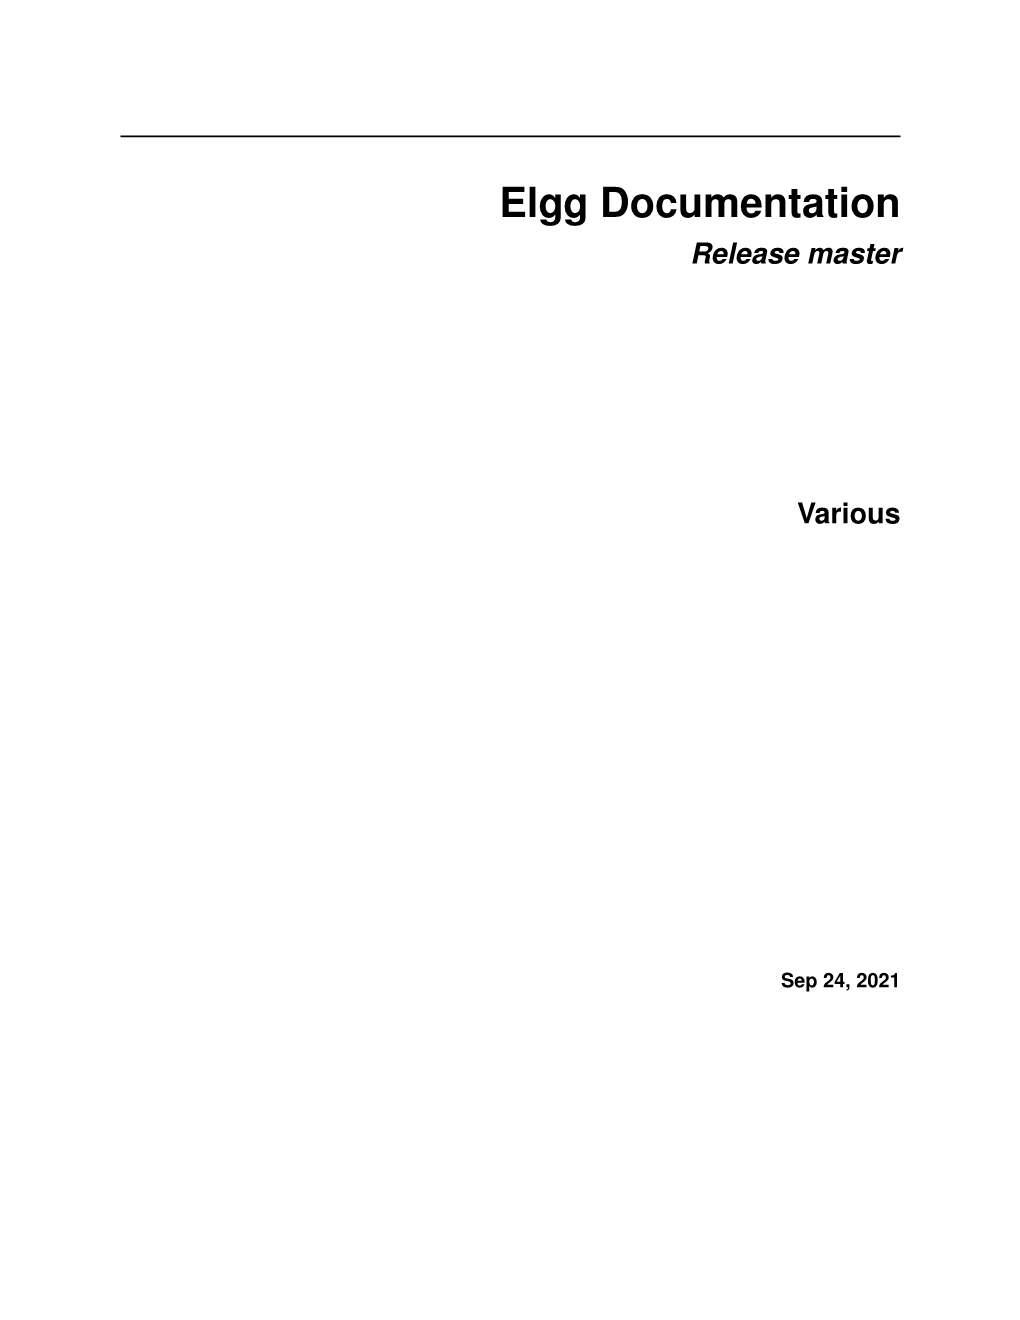 Elgg Documentation Release Master